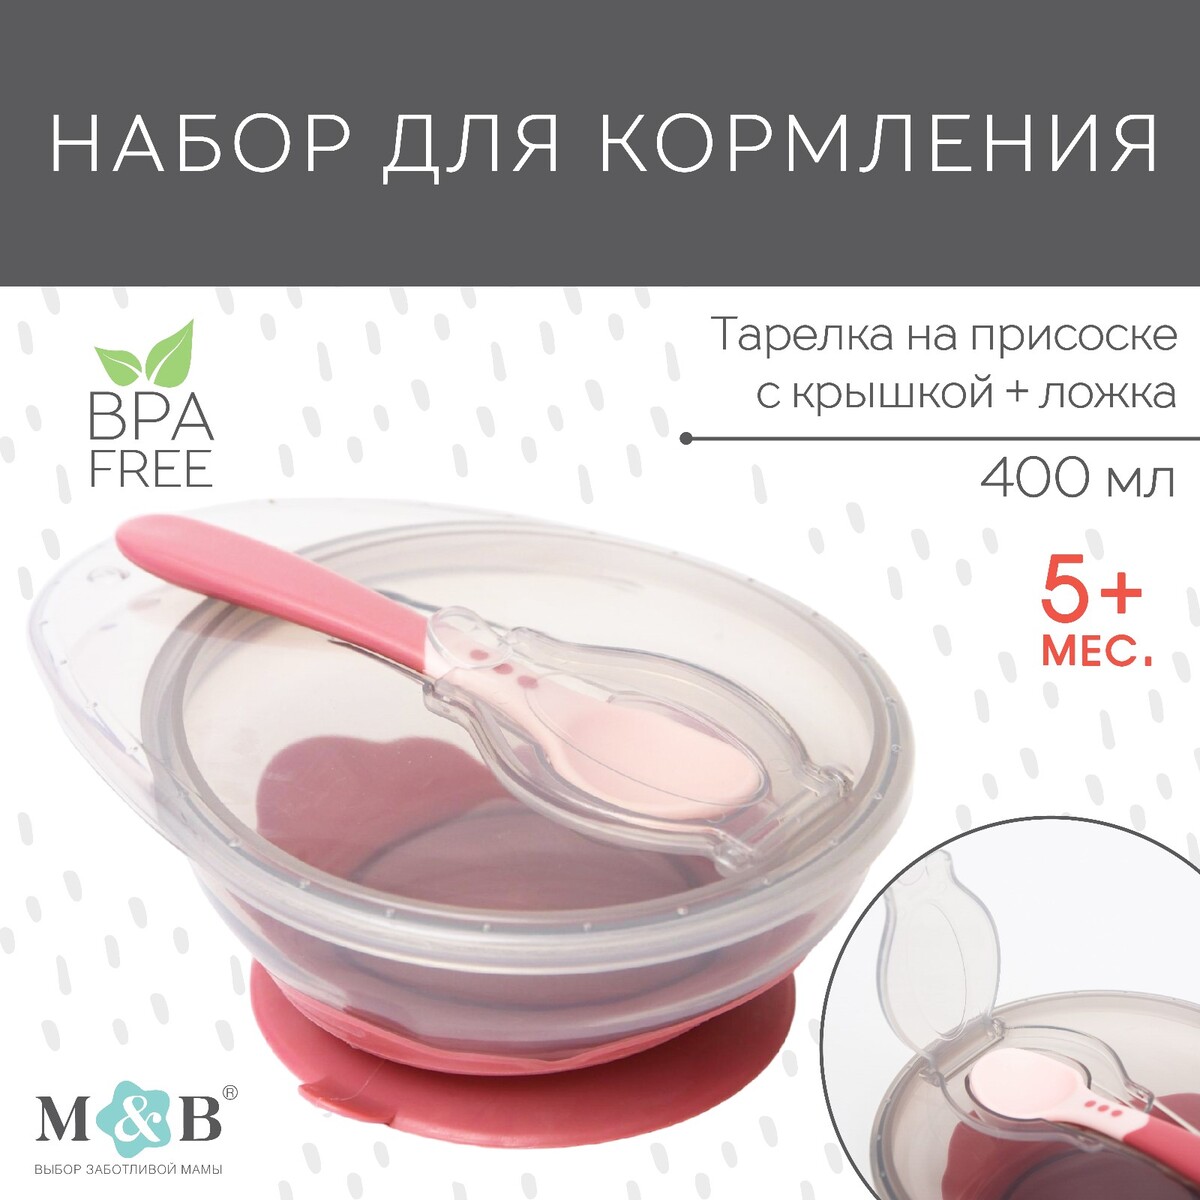 Набор для кормления: миска на присоске, с крышкой + ложка, цвет розовый, 400 мл. миска с крышкой 24 см муово gefu